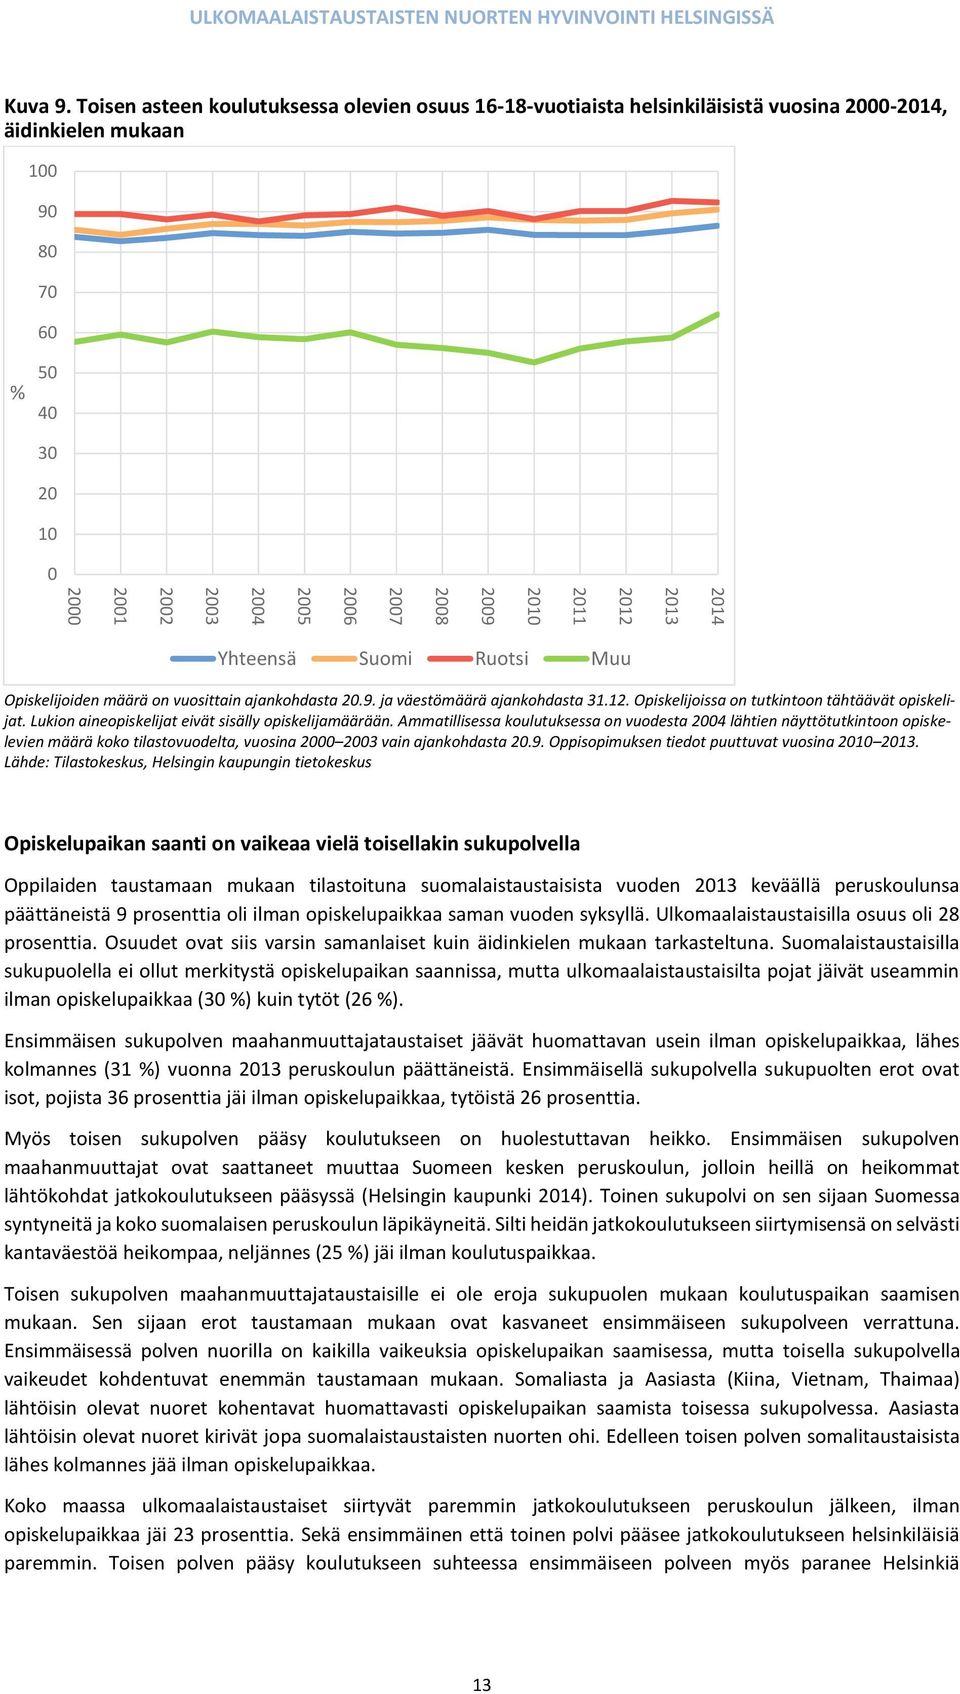 2010 2011 2012 2013 2014 Yhteensä Suomi Ruotsi Muu Opiskelijoiden määrä on vuosittain ajankohdasta 20.9. ja väestömäärä ajankohdasta 31.12. Opiskelijoissa on tutkintoon tähtäävät opiskelijat.